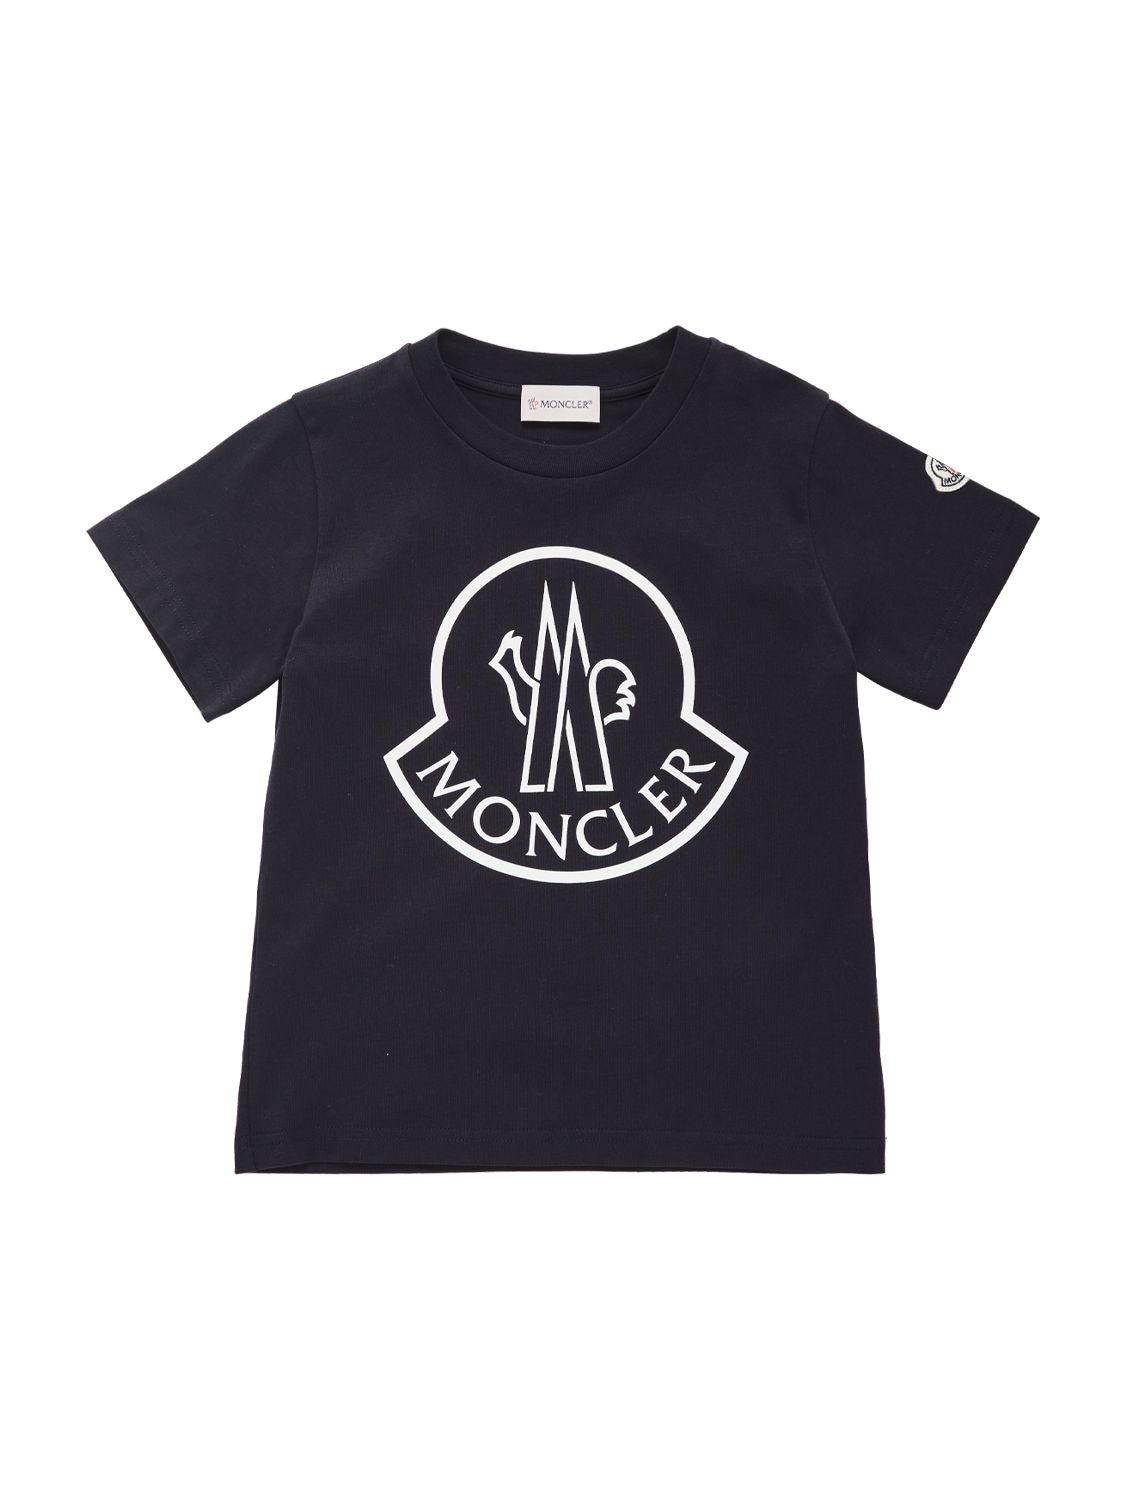 Moncler Kids' Logo Cotton Jersey T-shirt In Navy